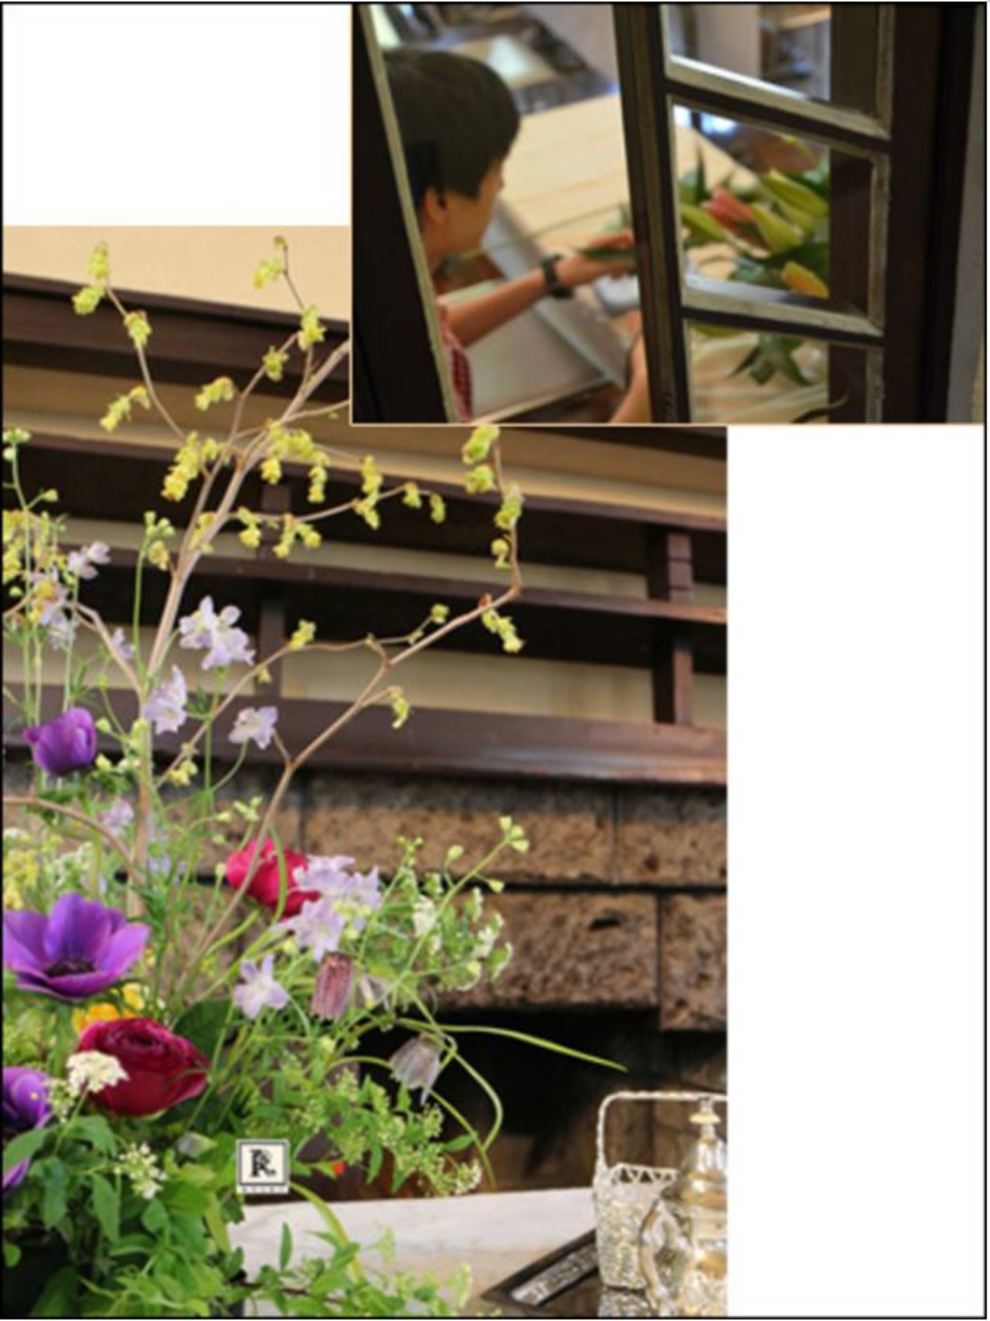 自由学園明日館公開講座 2014年度後期講座 「Décoration Florale -デコラティオン フローラーレ」